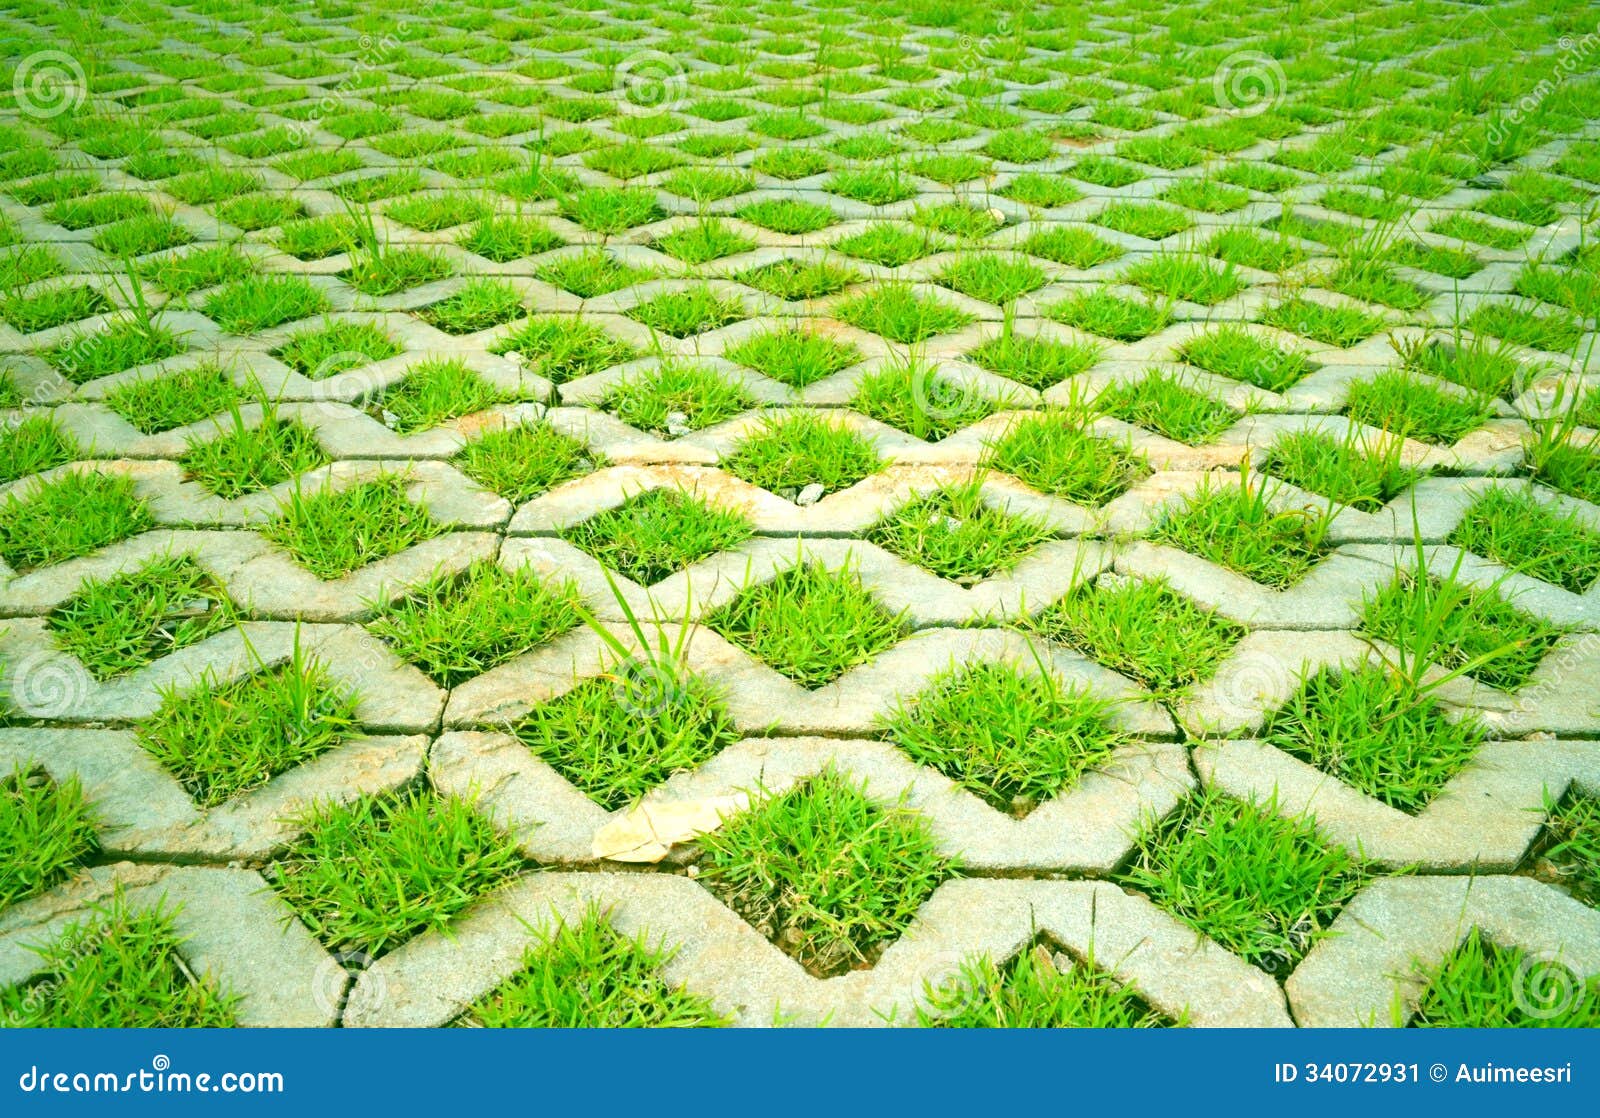  Gras  im Beton  stockbild Bild von outdoor konkret wiese 